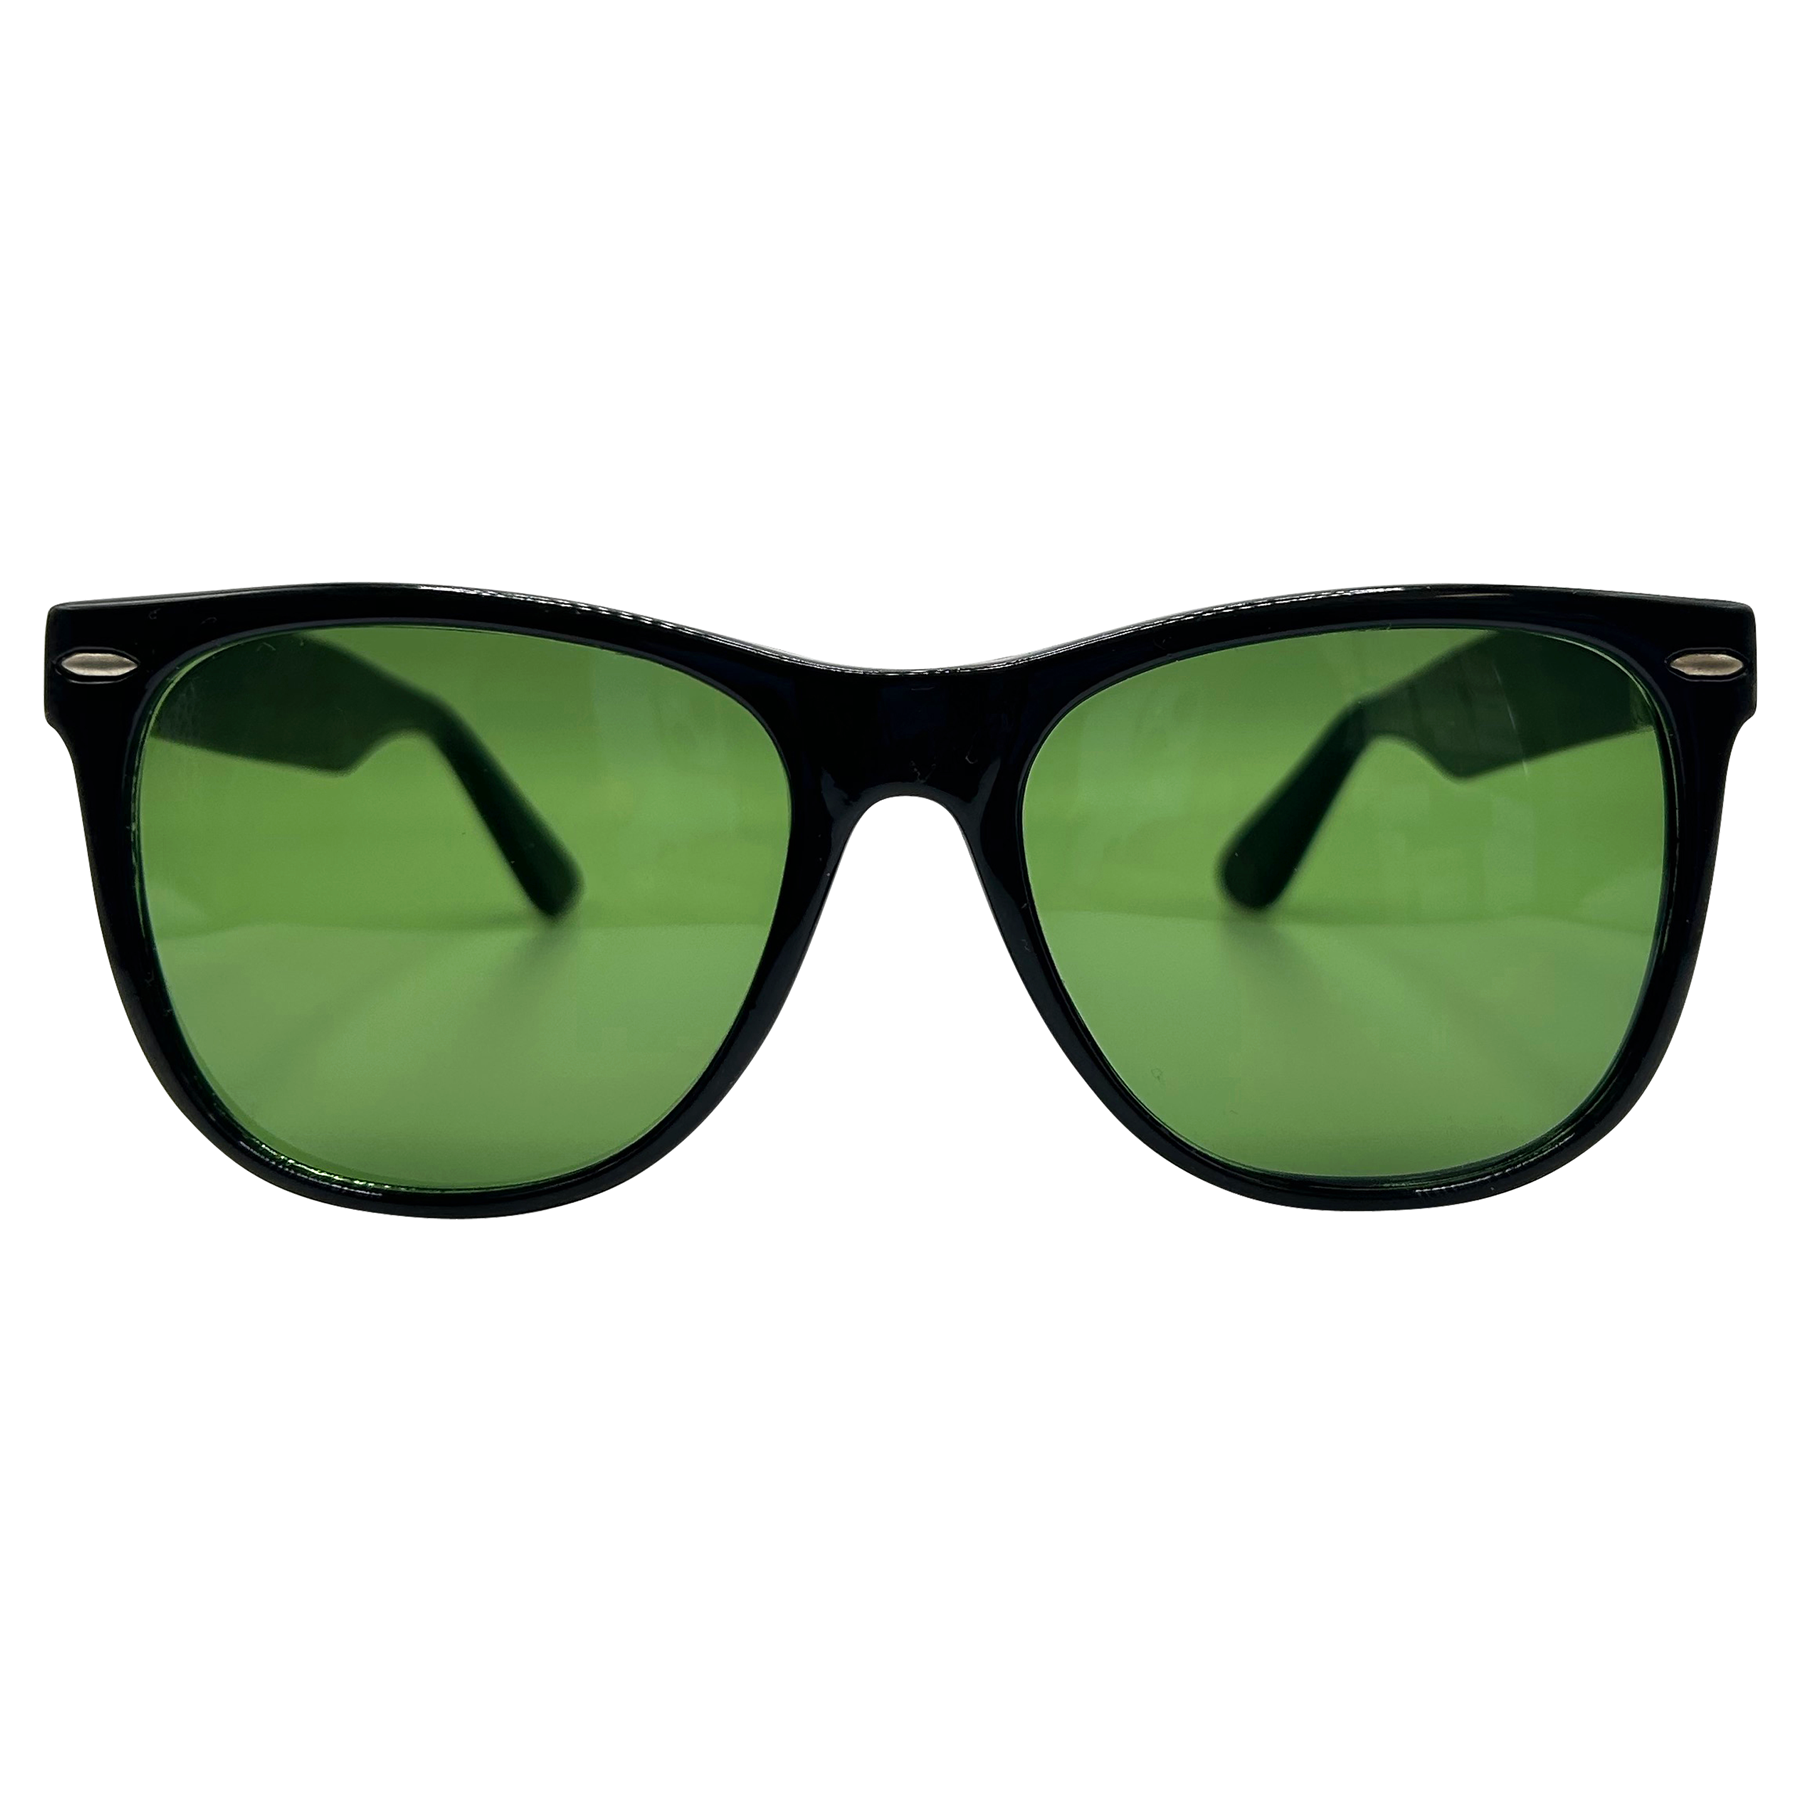 CLIFF Classic Sunglasses